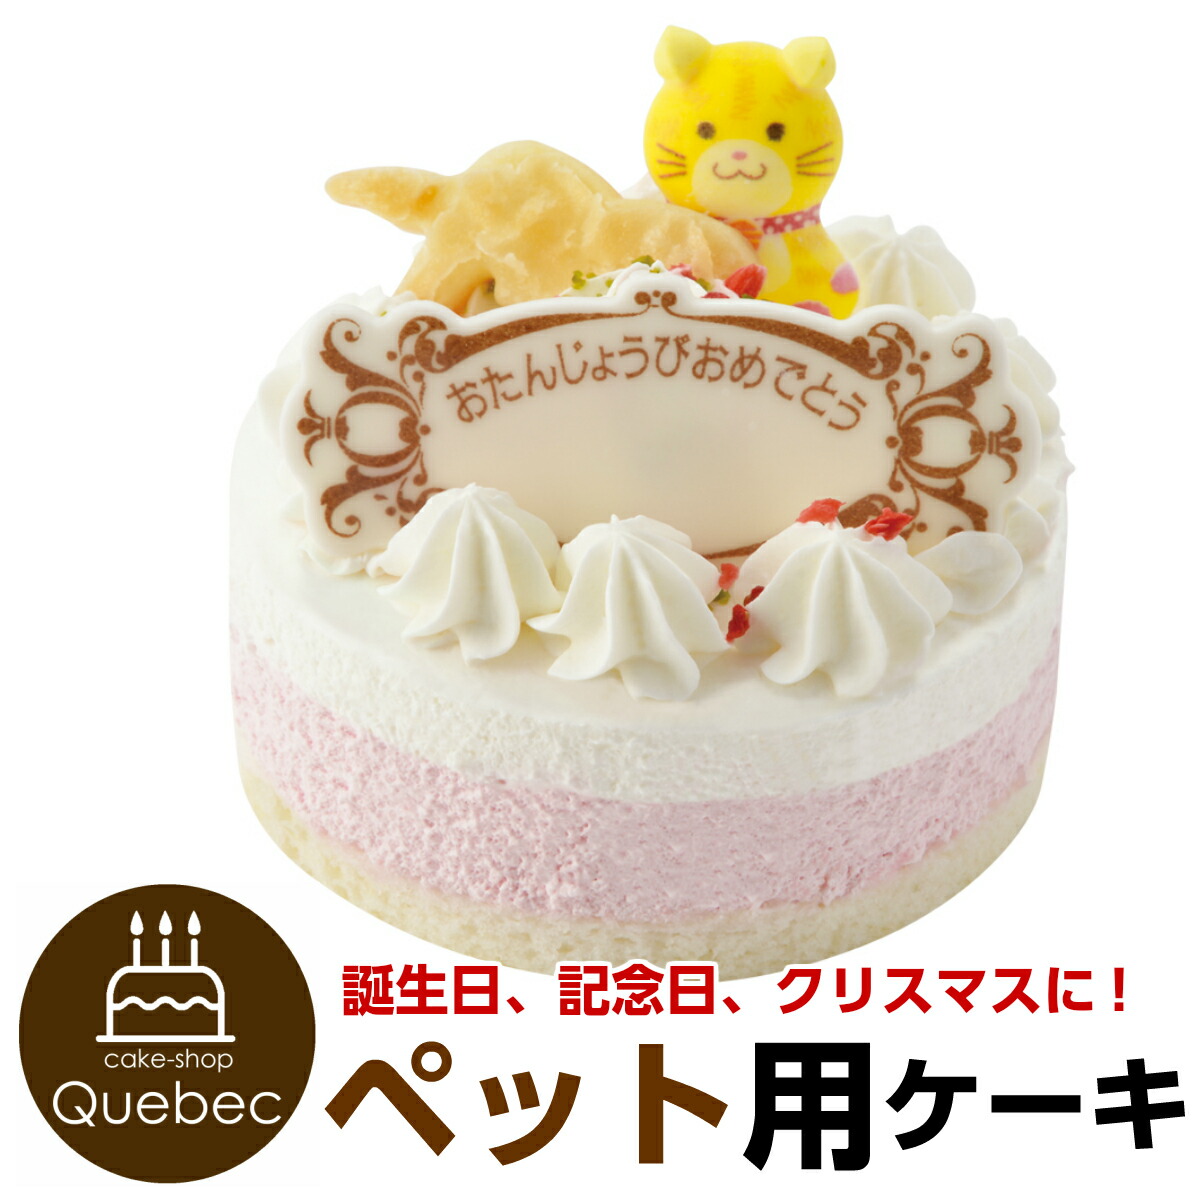 楽天市場 ねこ用ケーキ ペットケーキ 誕生日ケーキ ネコちゃん用 ねこ用 ペットケーキ ペットライブラリー 暮らしの総合デパート ケベック